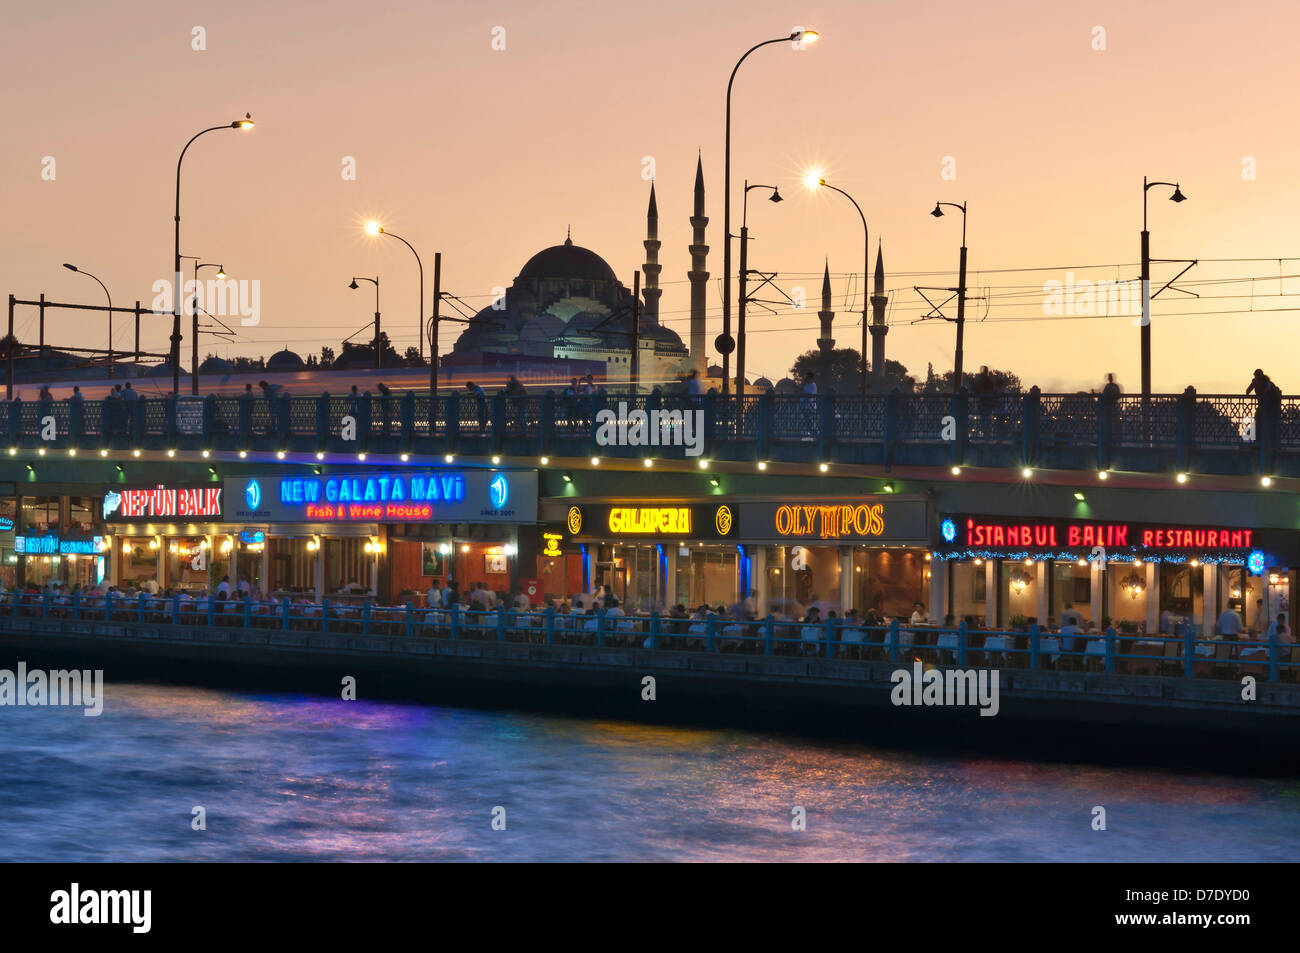 Die Galata-Brücke und der Süleymaniye-Moschee im Hintergrund in Istanbul. Stockfoto